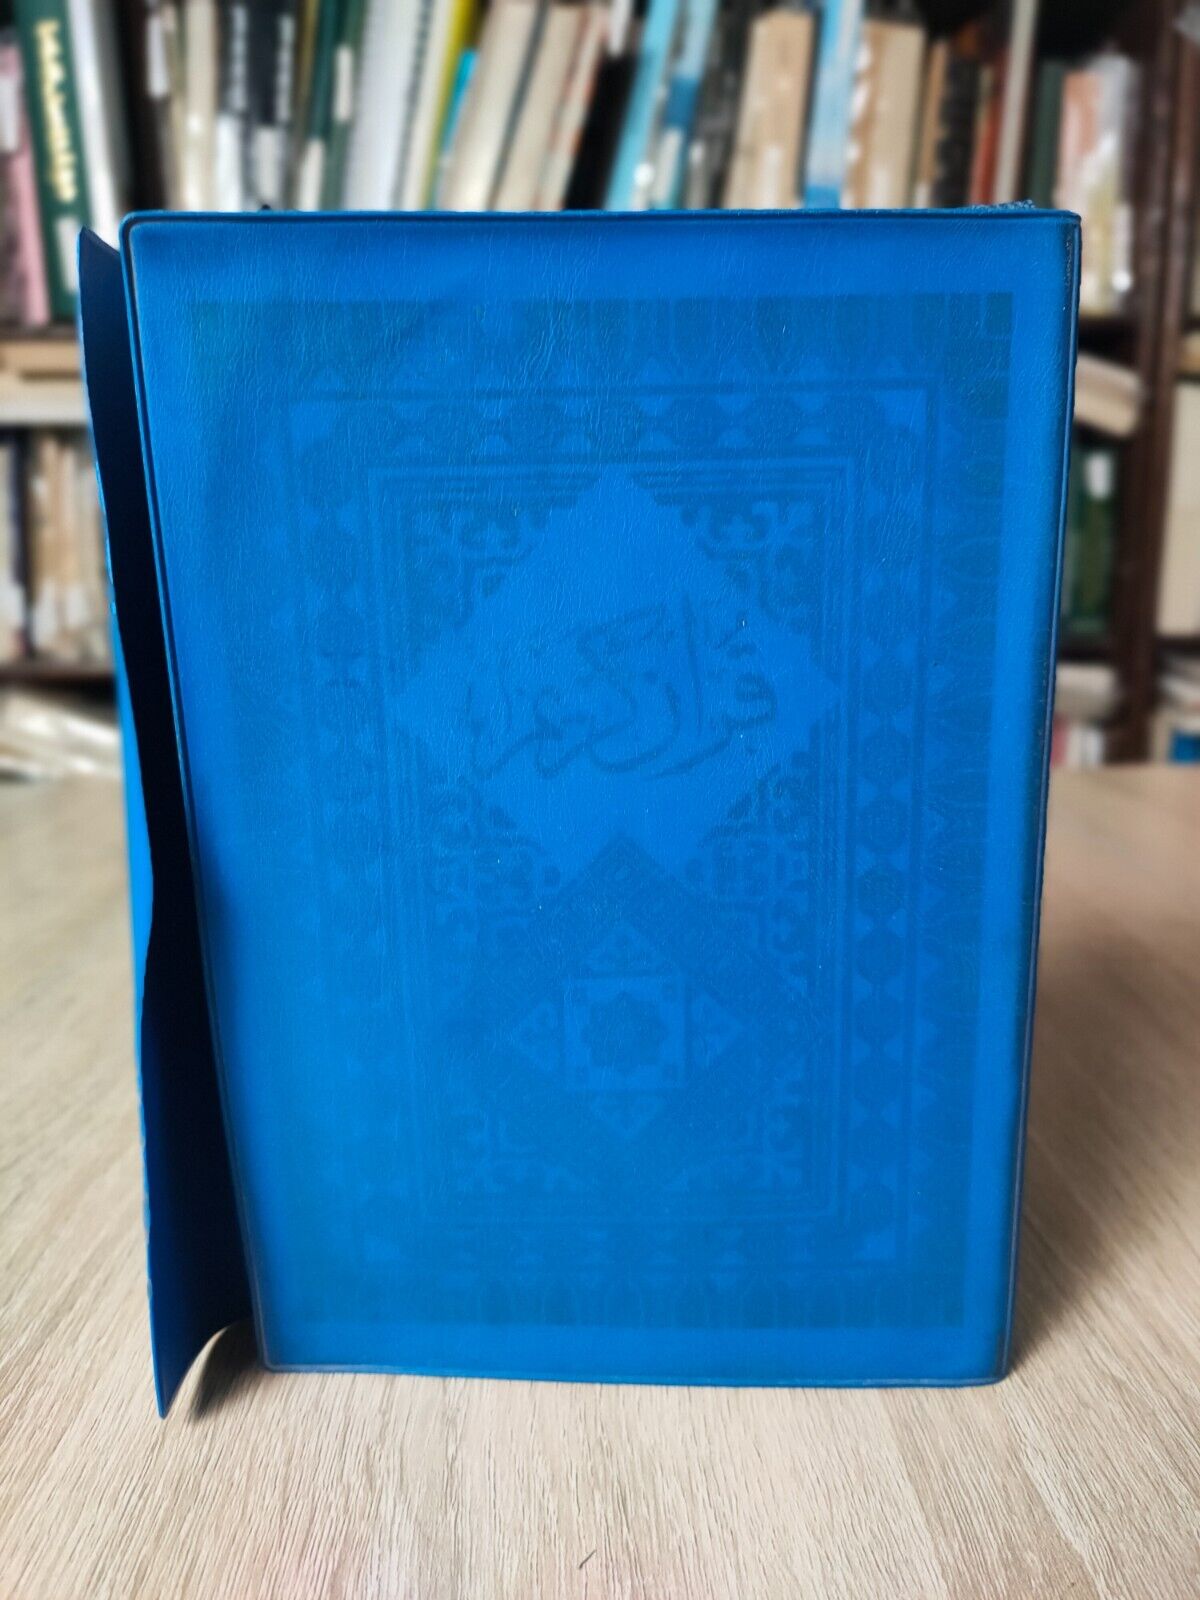 1970 Koran Islamic Arabic Holy Quran القرآن الكريم السيد مصطفى نظيف بقدروغلى